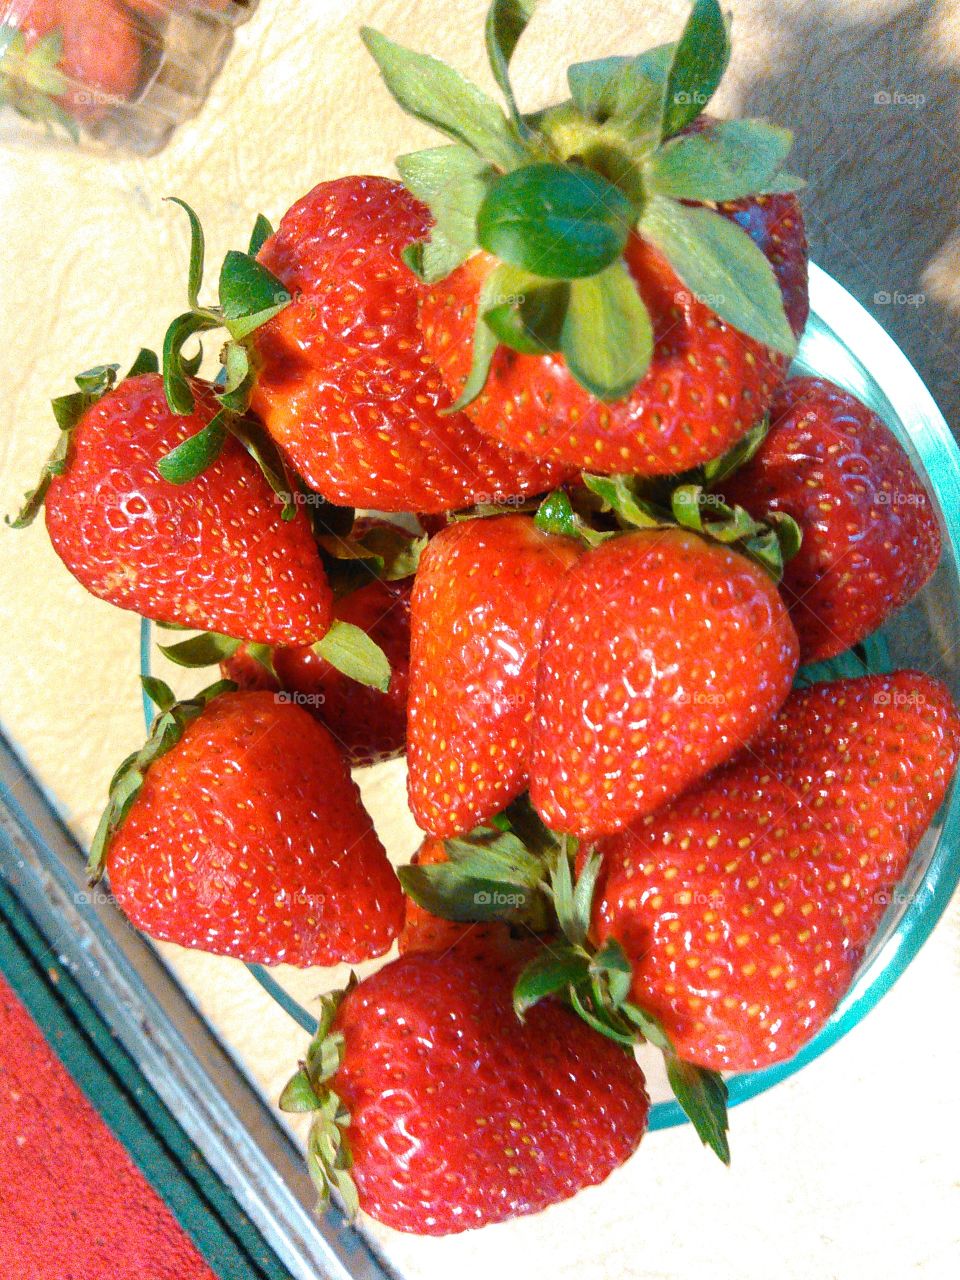 Sweet bowl of strawberries. Summer berries